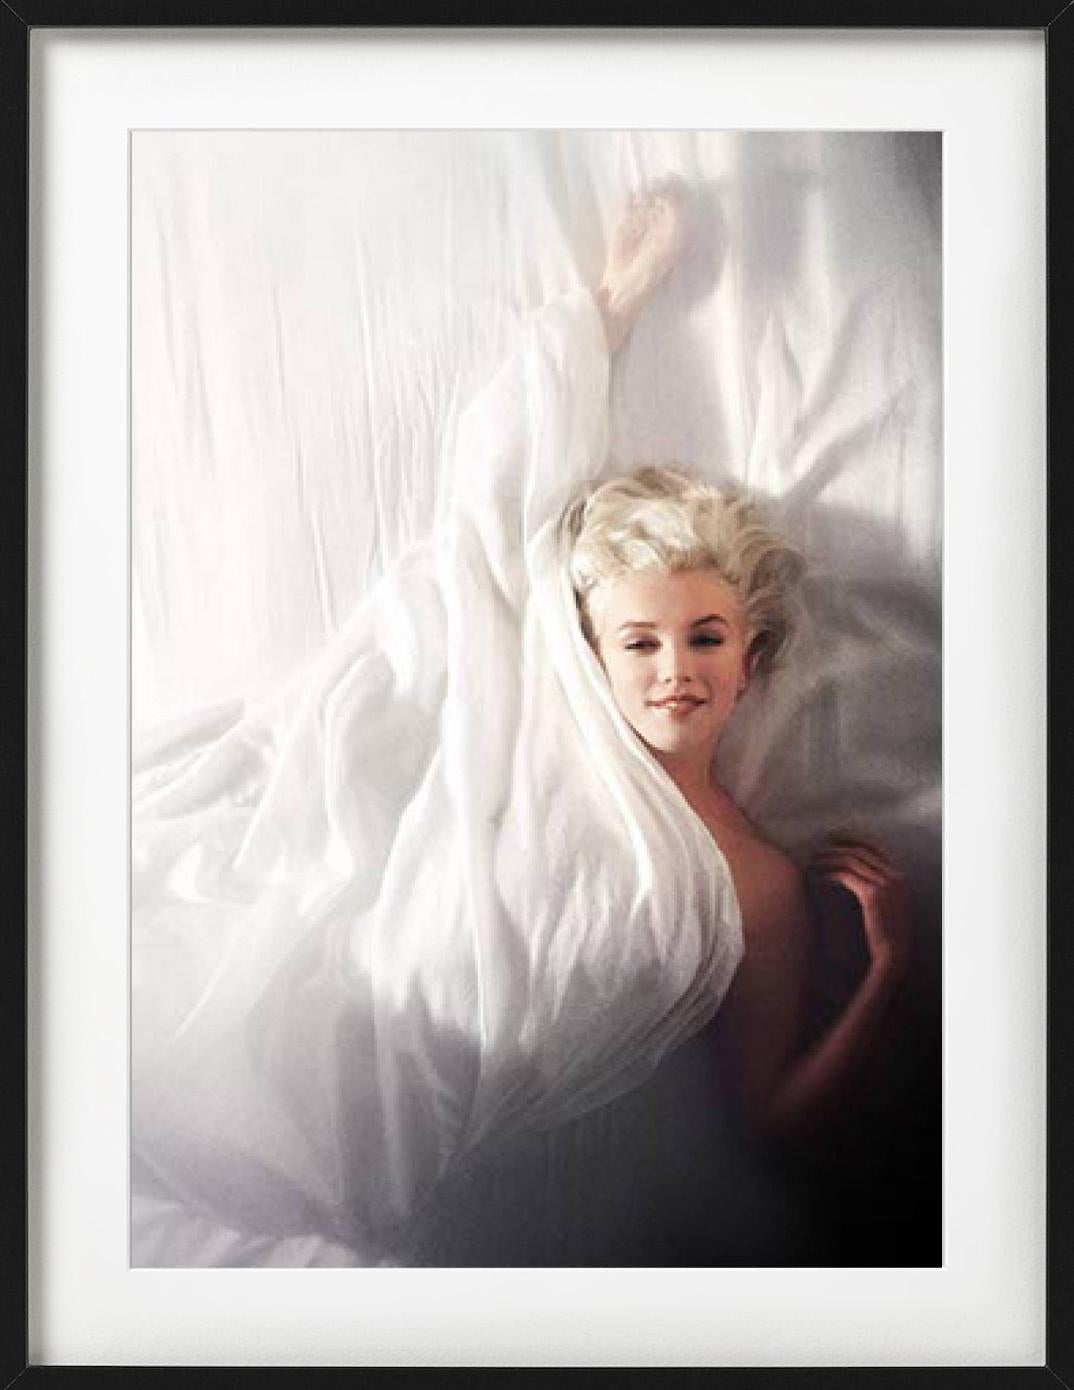 Marilyn Monroe – nackt zwischen weißen Blättern, Vintage-Fotografie der bildenden Kunst, 1961 – Photograph von Douglas Kirkland